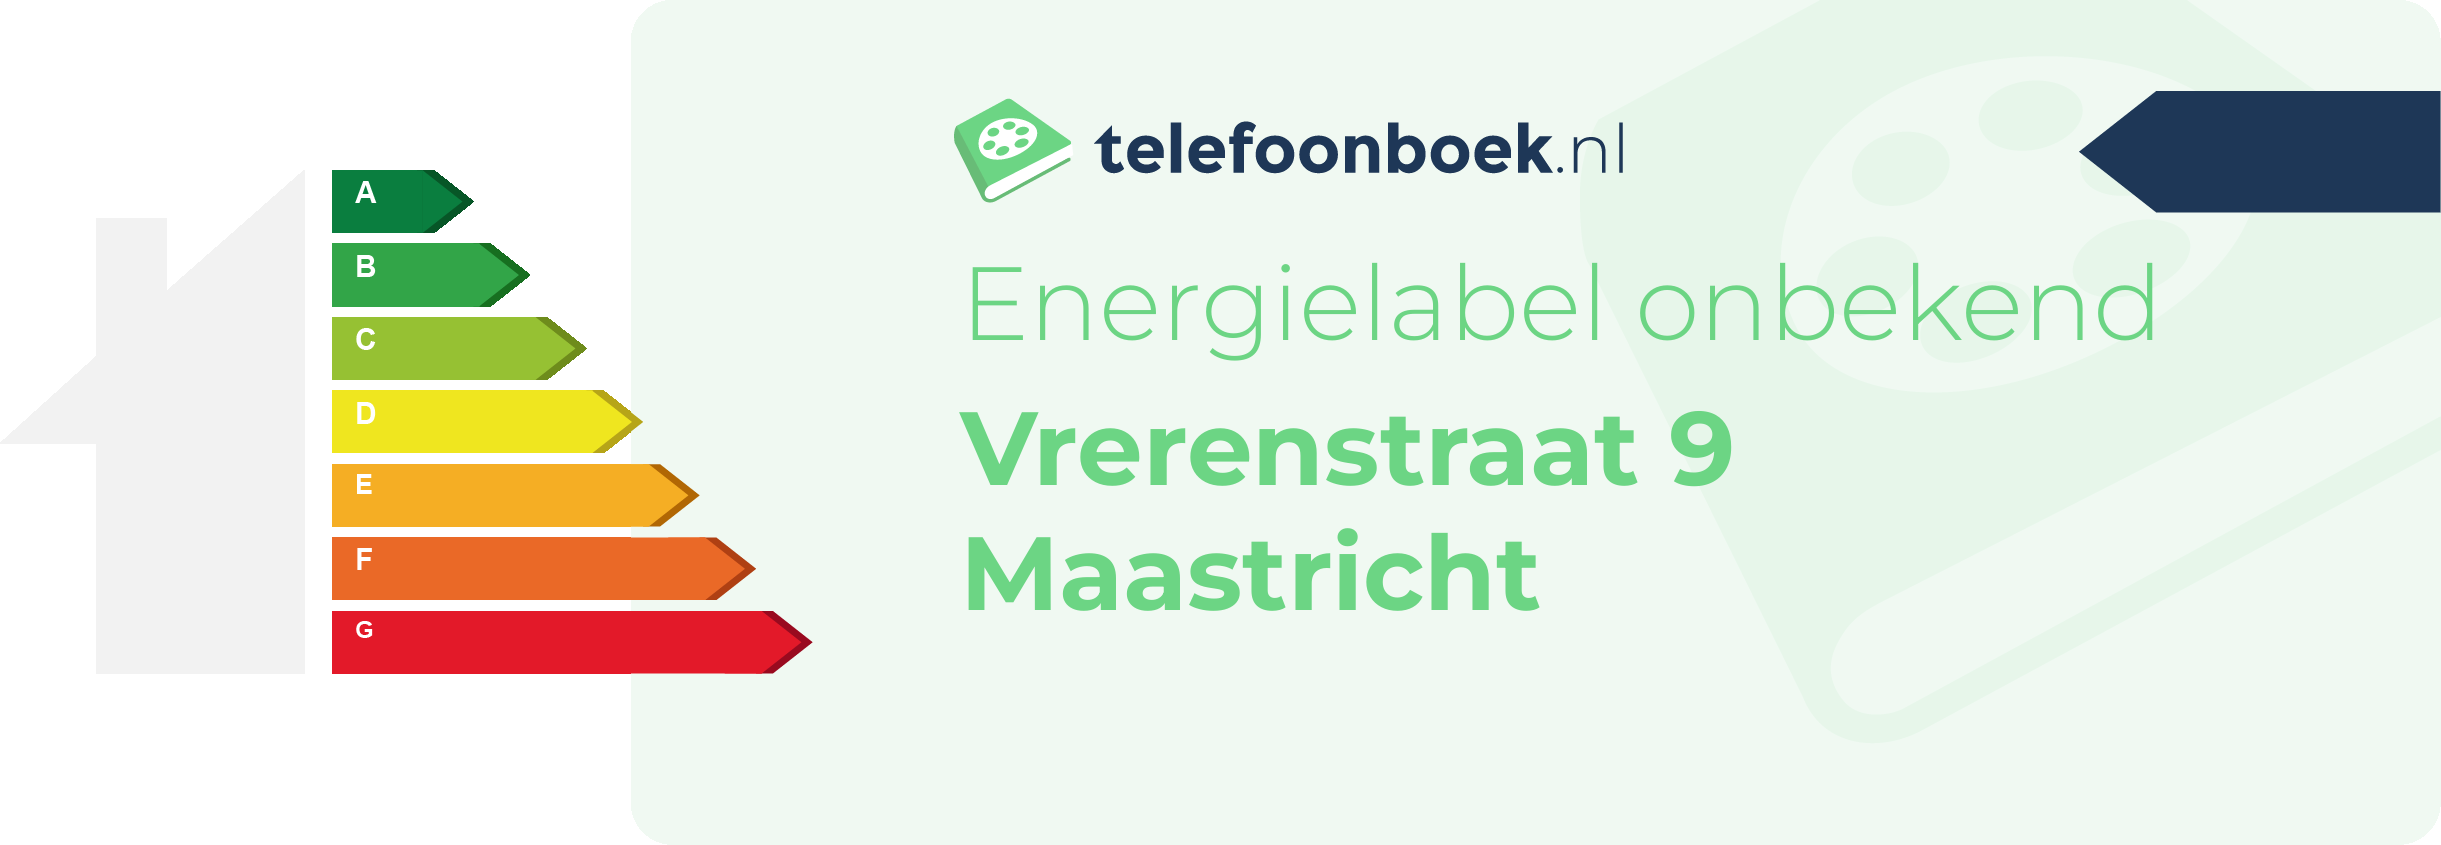 Energielabel Vrerenstraat 9 Maastricht